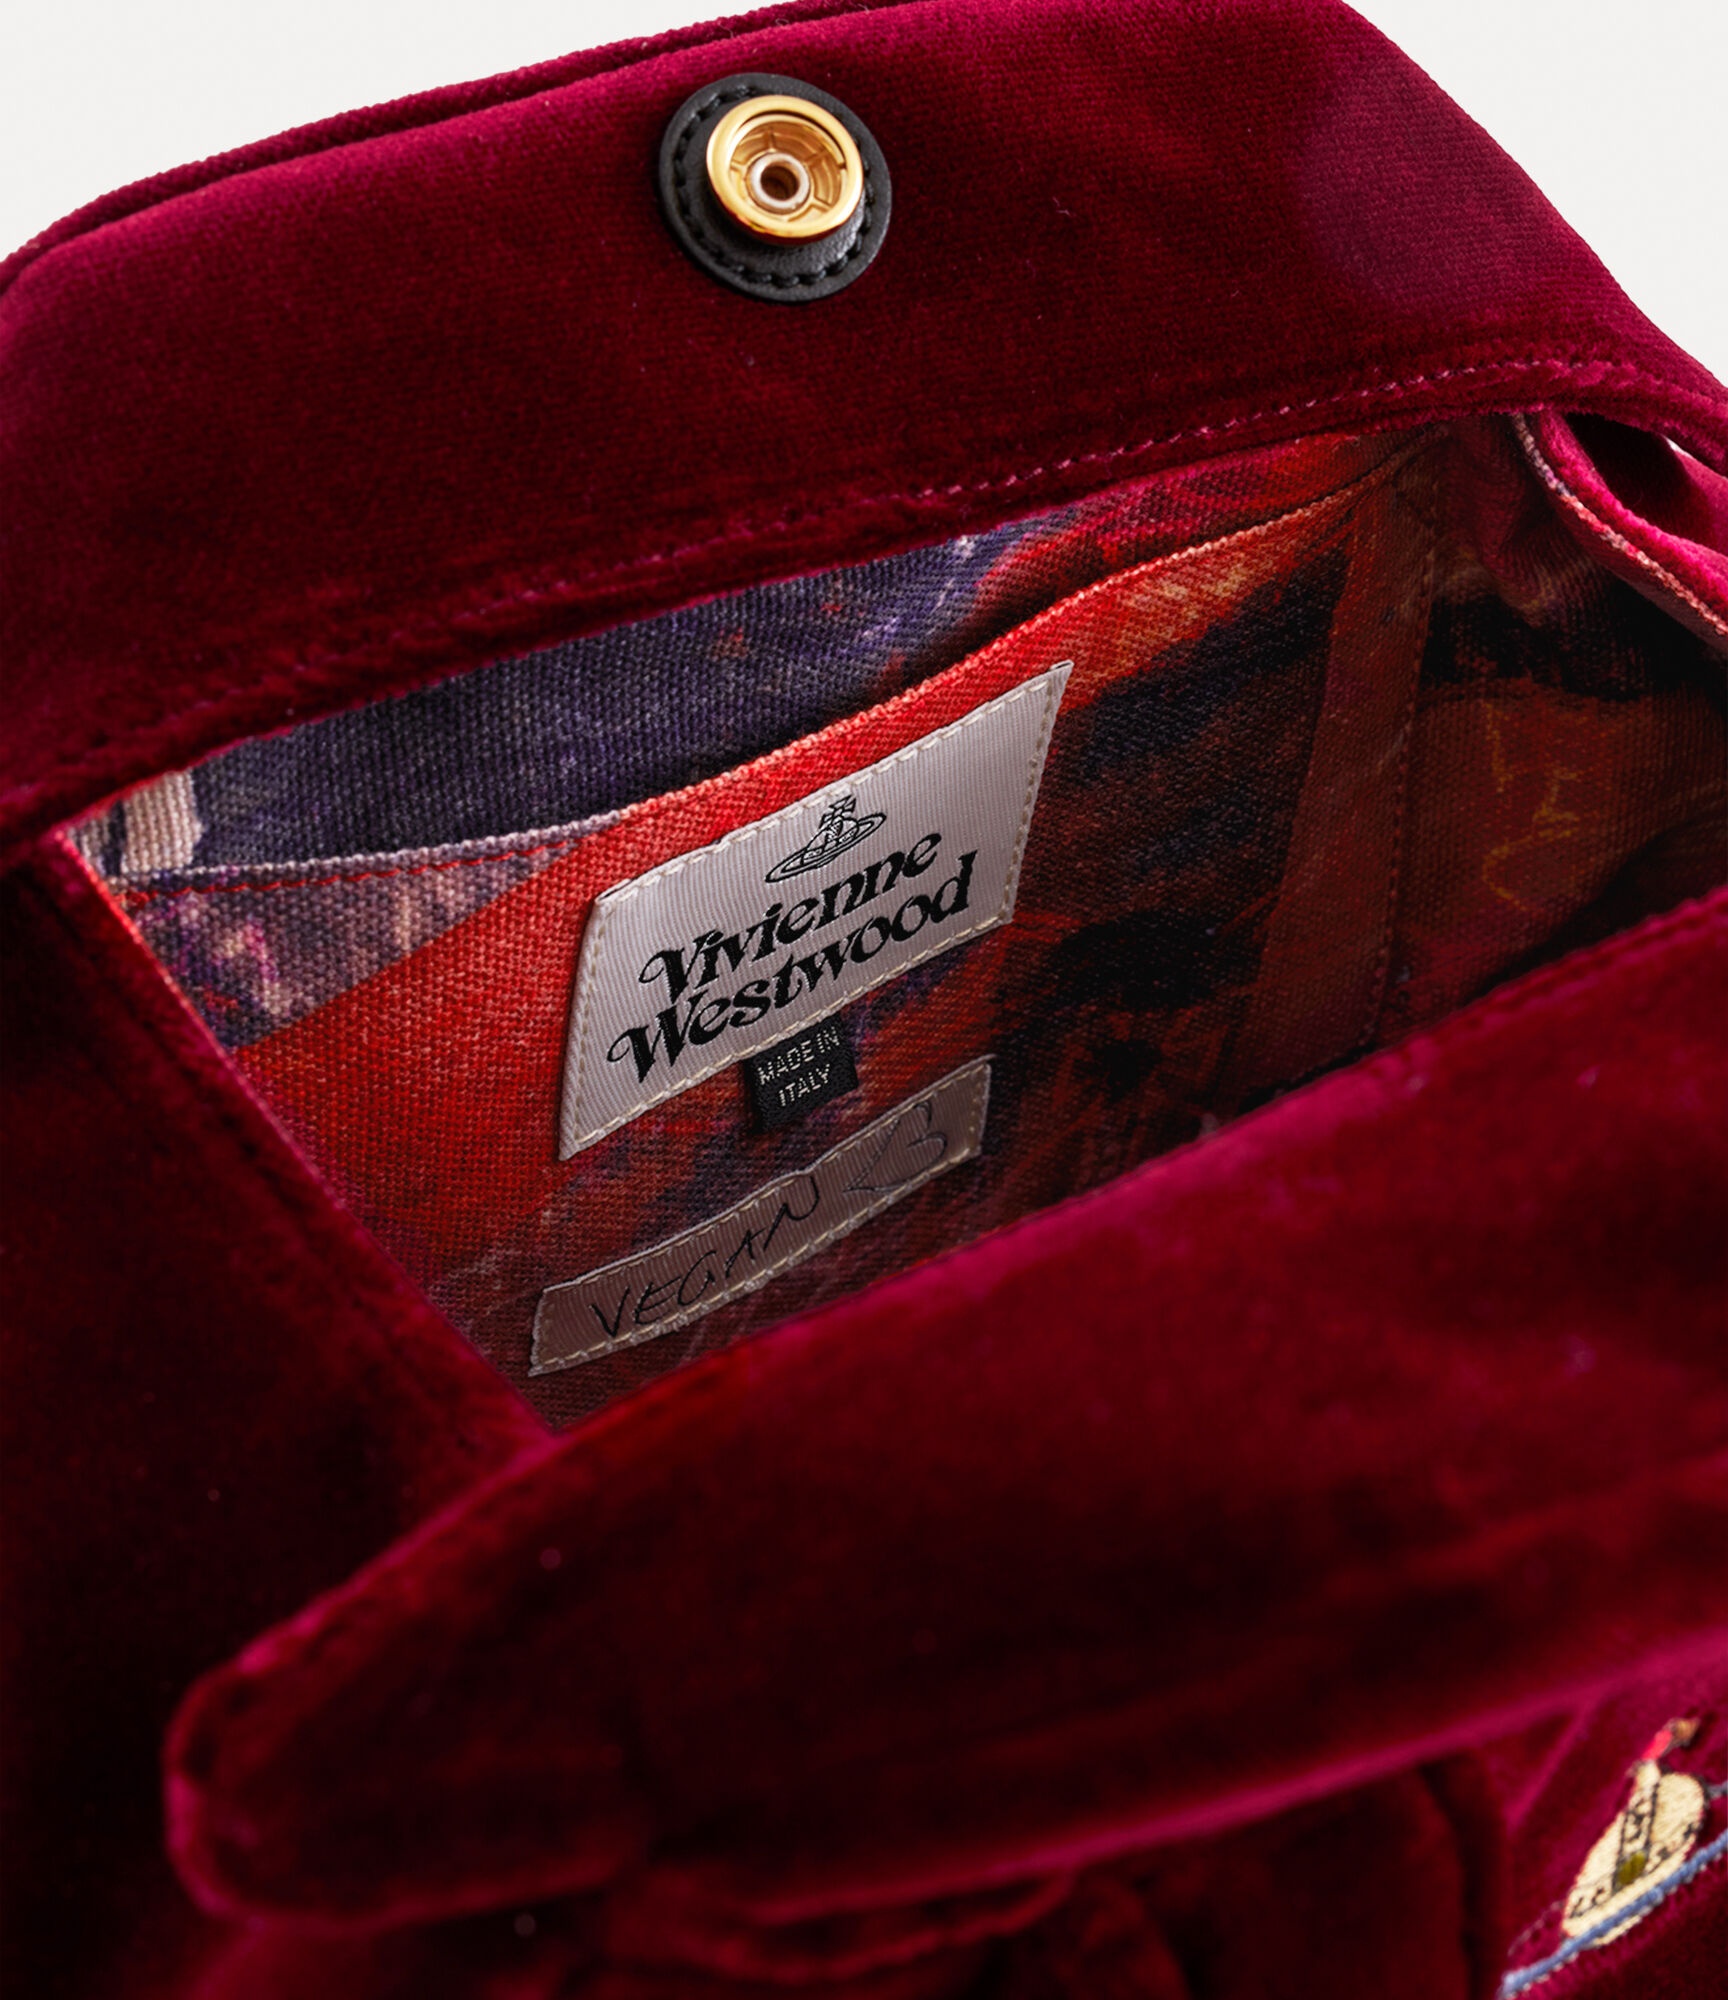 Vivienne Westwood Belle Heart Frame Top Handle Bag In Burgundy